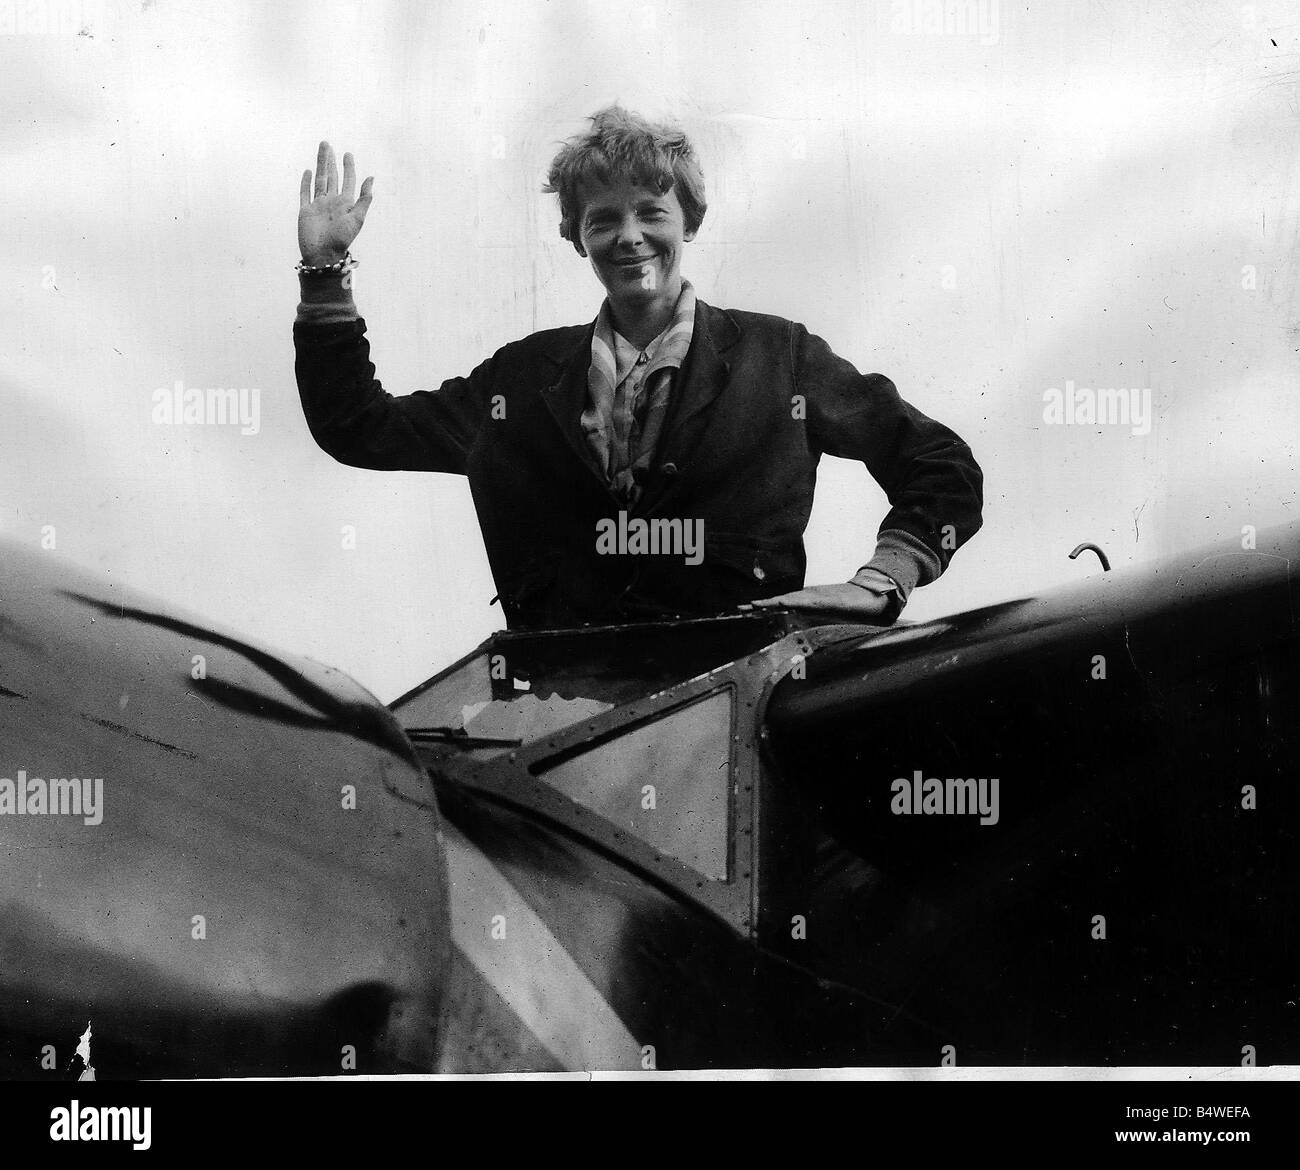 Amelia Earhart completato il suo volo Atlantico la nostra immagine mostra Amelia Earhart airwoman a salutare la folla dopo lo sbarco a Londonderry dopo battenti Atlantic Foto Stock